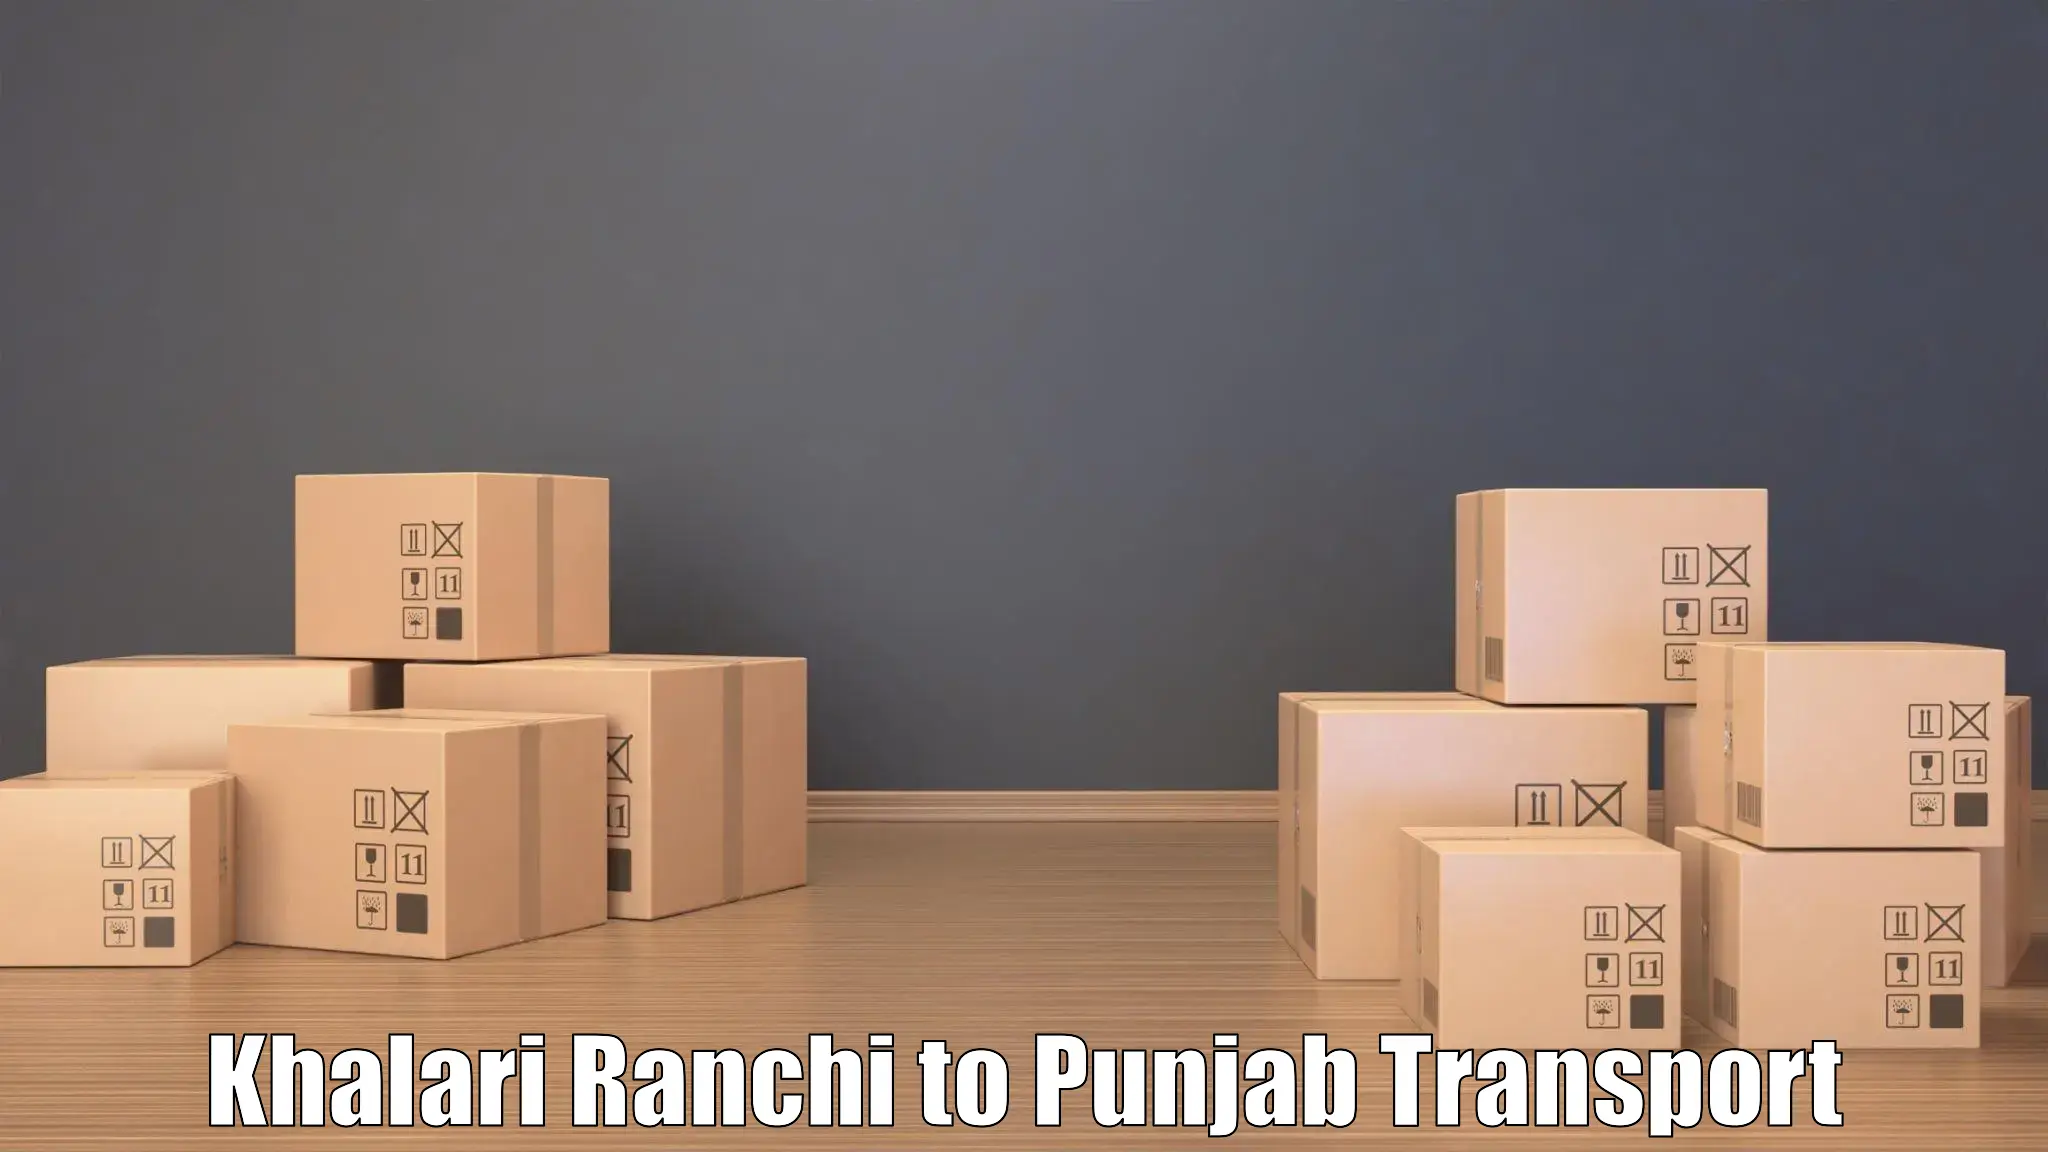 All India transport service Khalari Ranchi to Fatehgarh Sahib